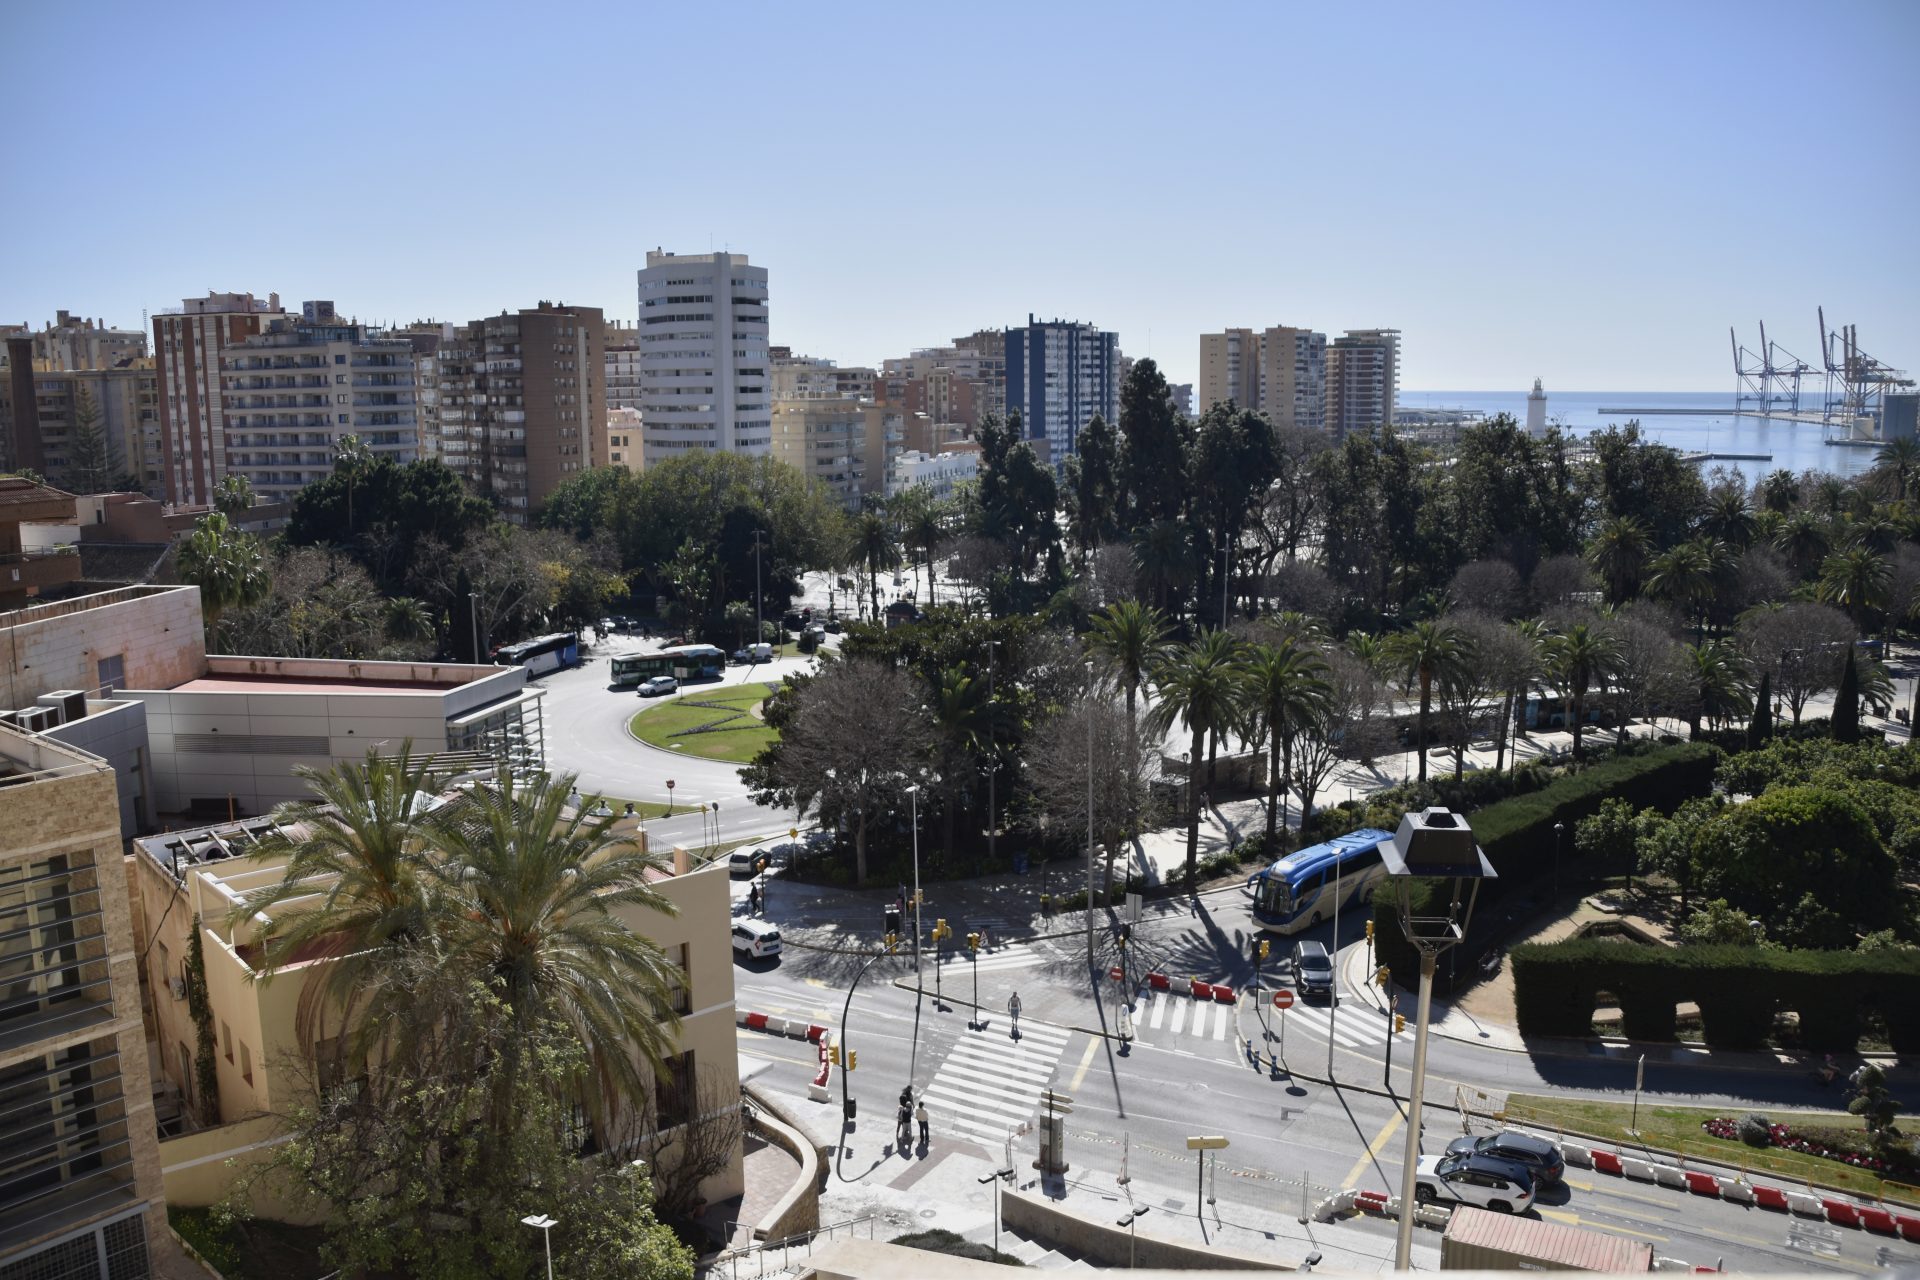 Vista general del centro urbano de Málaga. Construir ciudades sostenibles, uno de los grandes retos para contribuir a reducir las emisiones de efecto invernadero, se ha convertido en un desafío ambiental, tecnológico y económico, pero también en un objetivo común que demanda un enfoque más social y "ecocéntrico".EFE/Irene Martín Morales